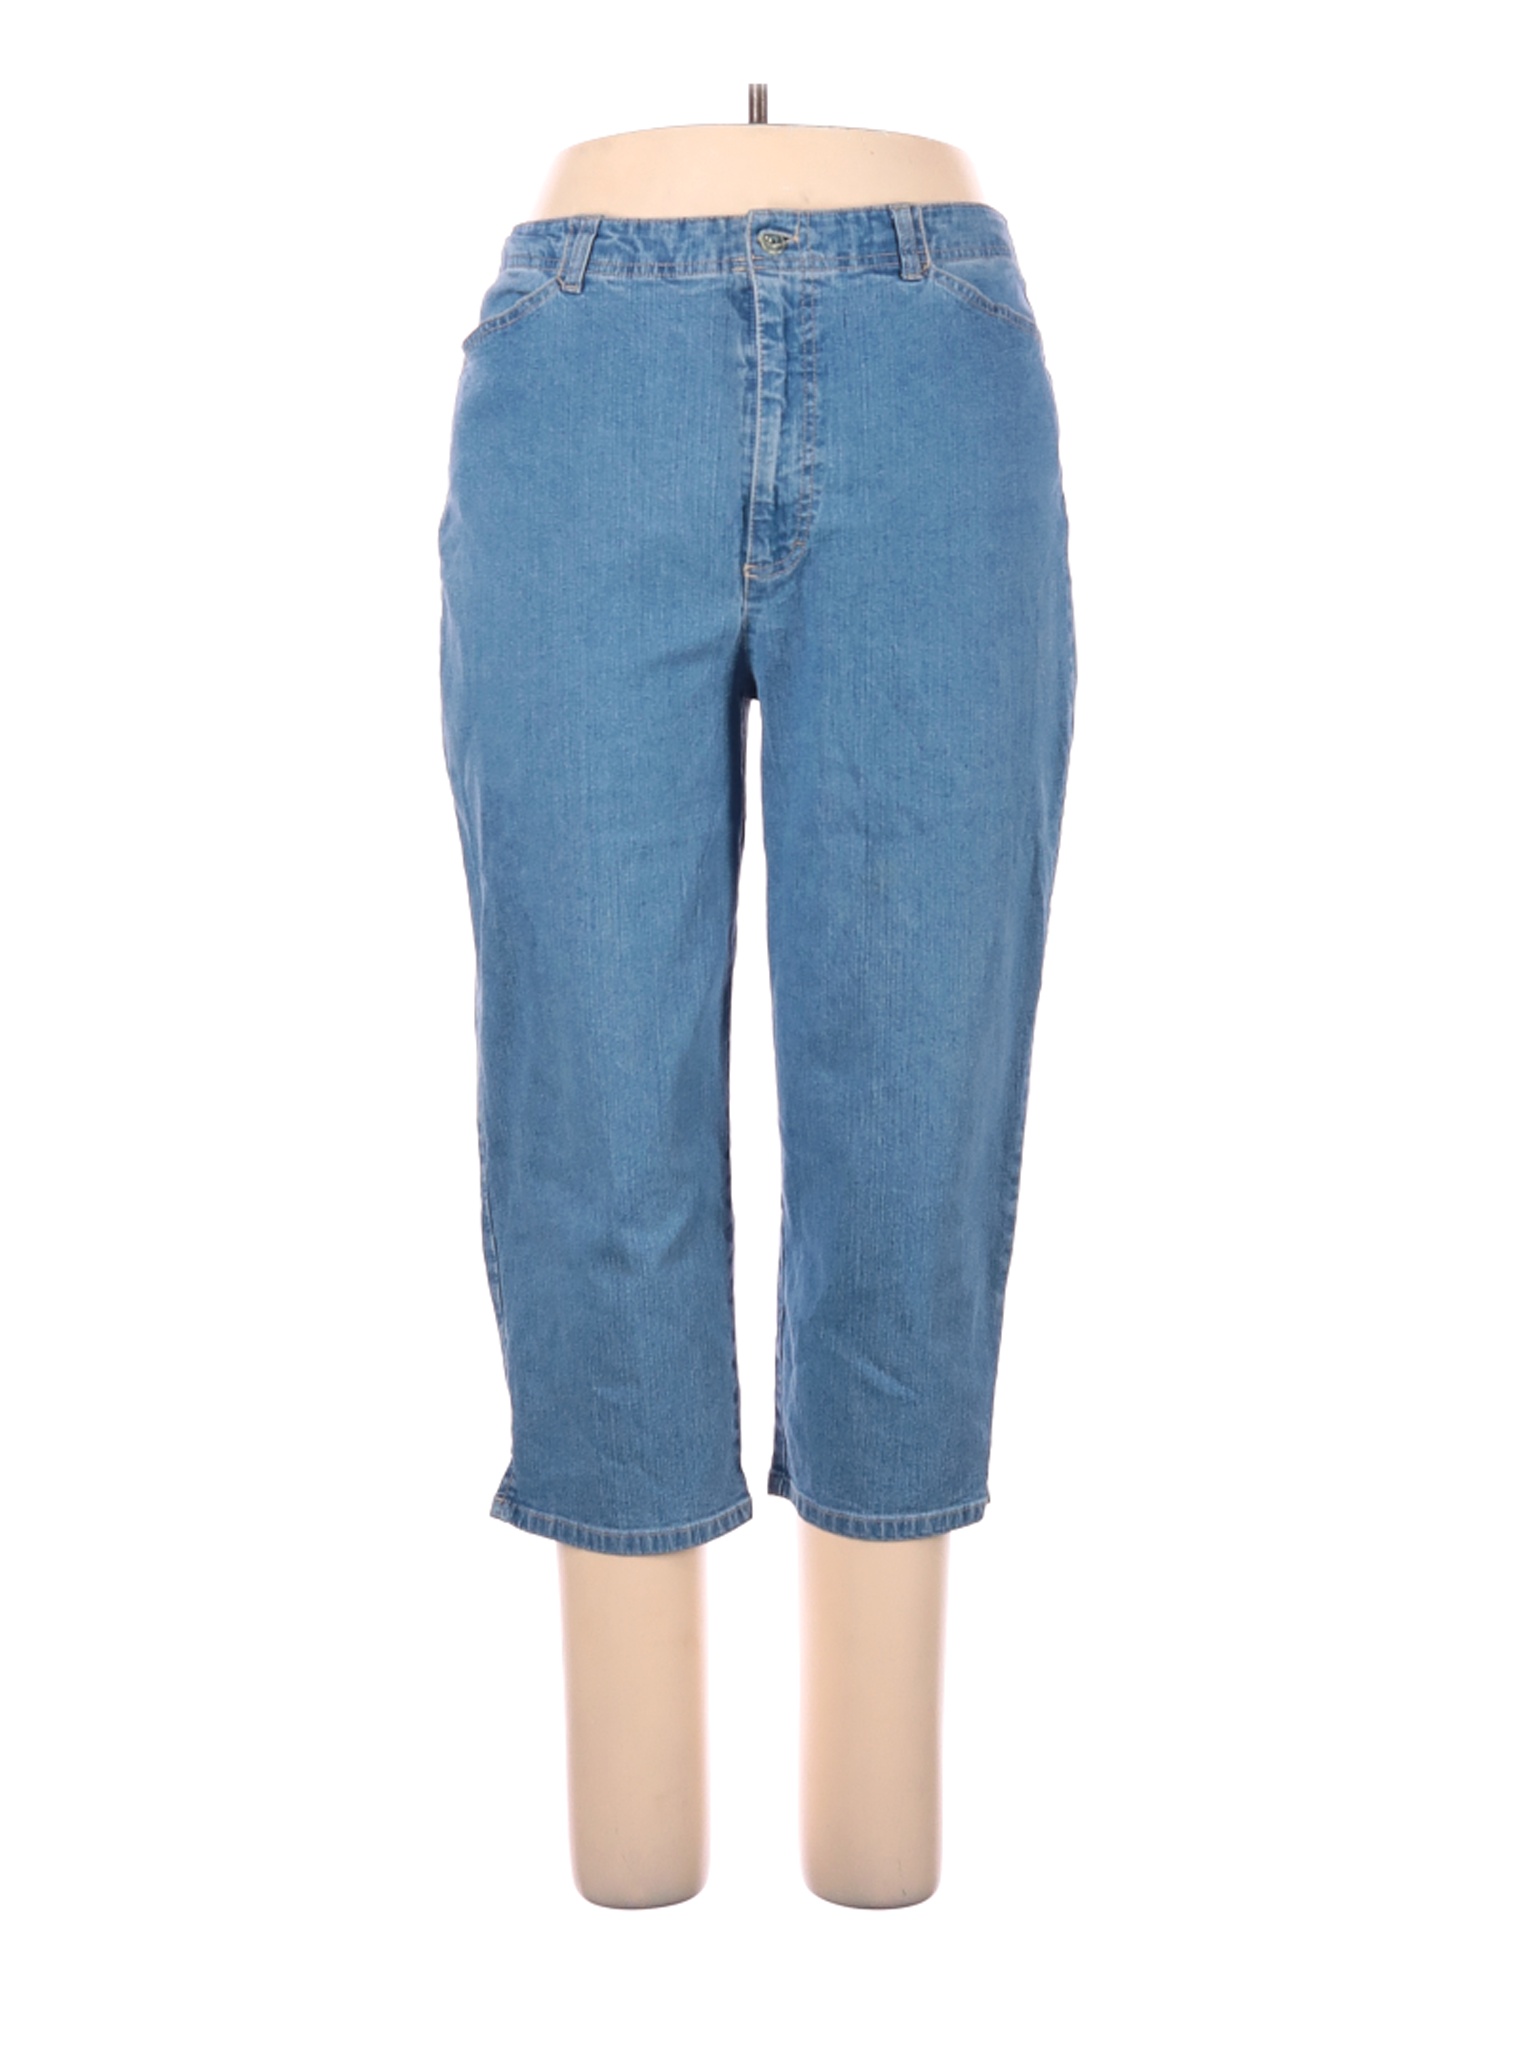 Gloria Vanderbilt Women Blue Jeans 16 | eBay